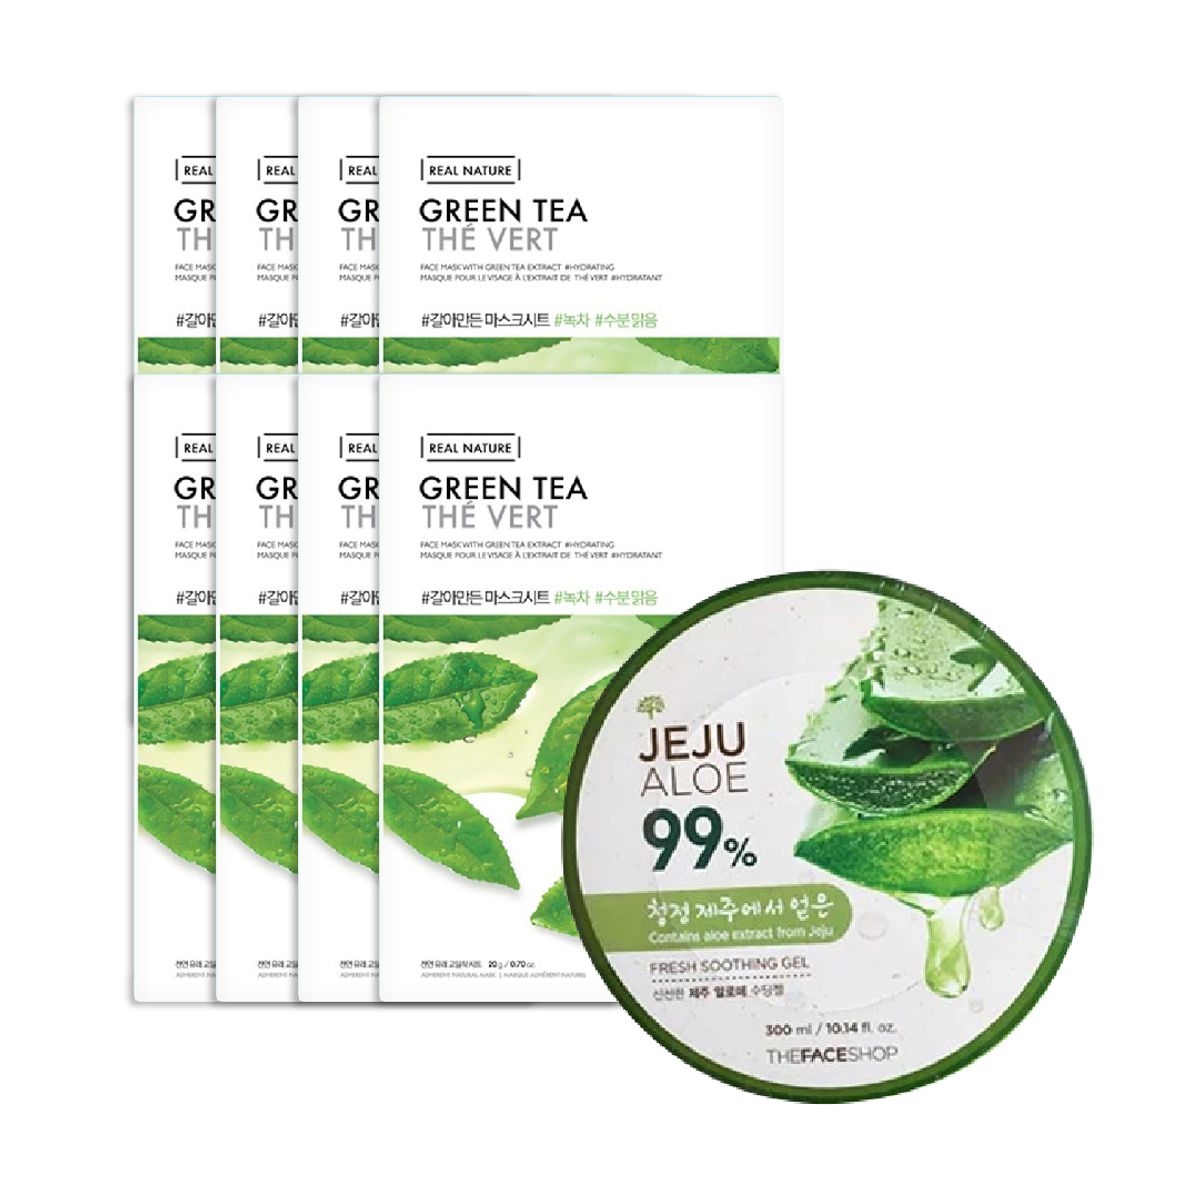 gift-combo-mat-na-giay-thanh-loc-da-real-nature-green-tea-gel-duong-da-da-nang-jeju-aloe-fresh-soothing-gel-300ml-1